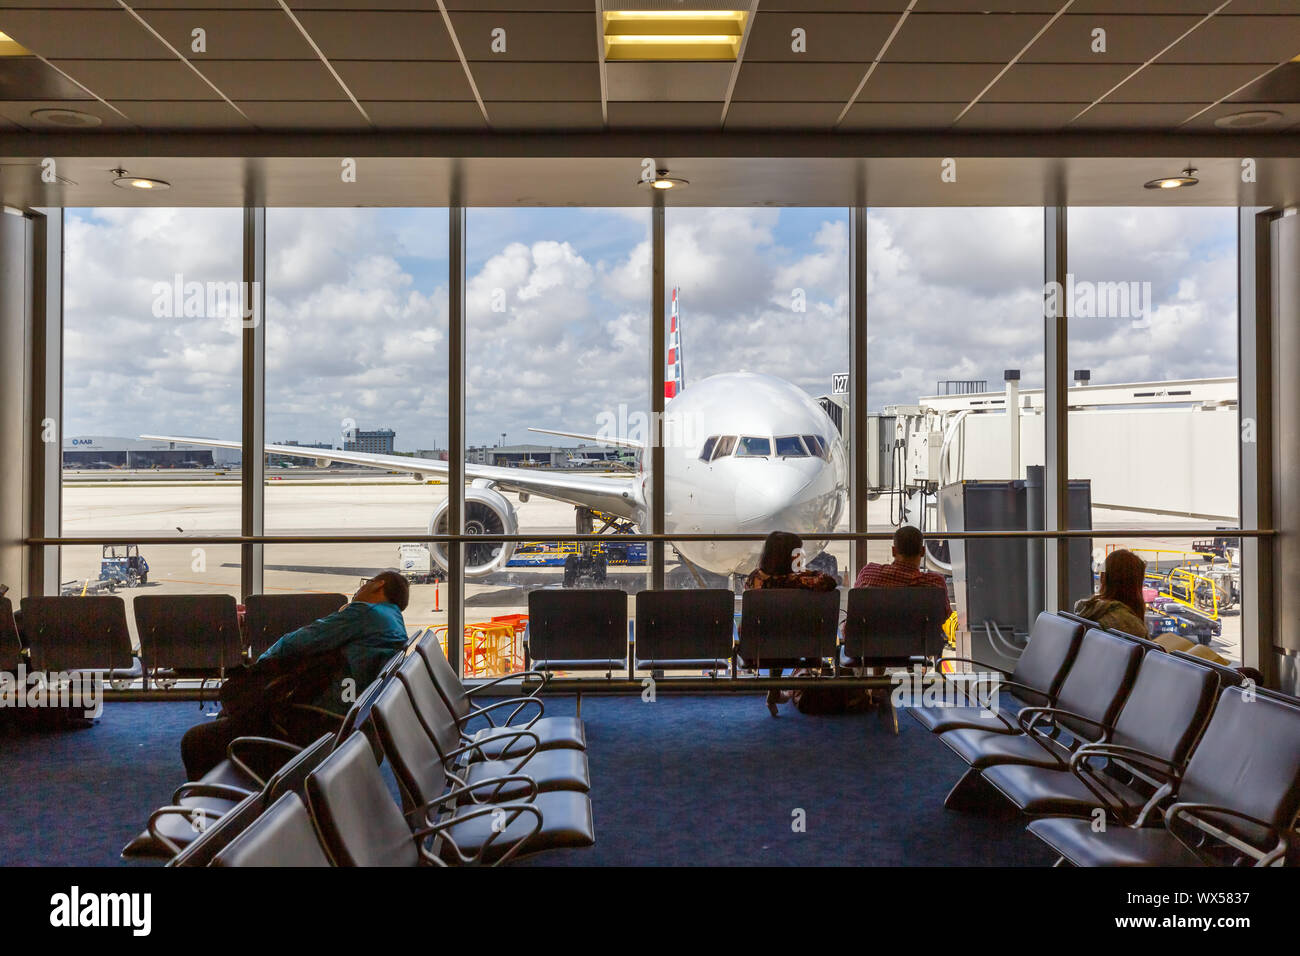 Miami, Florida - April 7, 2019: symbolisches Bild aviation Passagiere American Airlines Flugzeug am Flughafen Miami (MIA) in den Vereinigten Staaten. Stockfoto